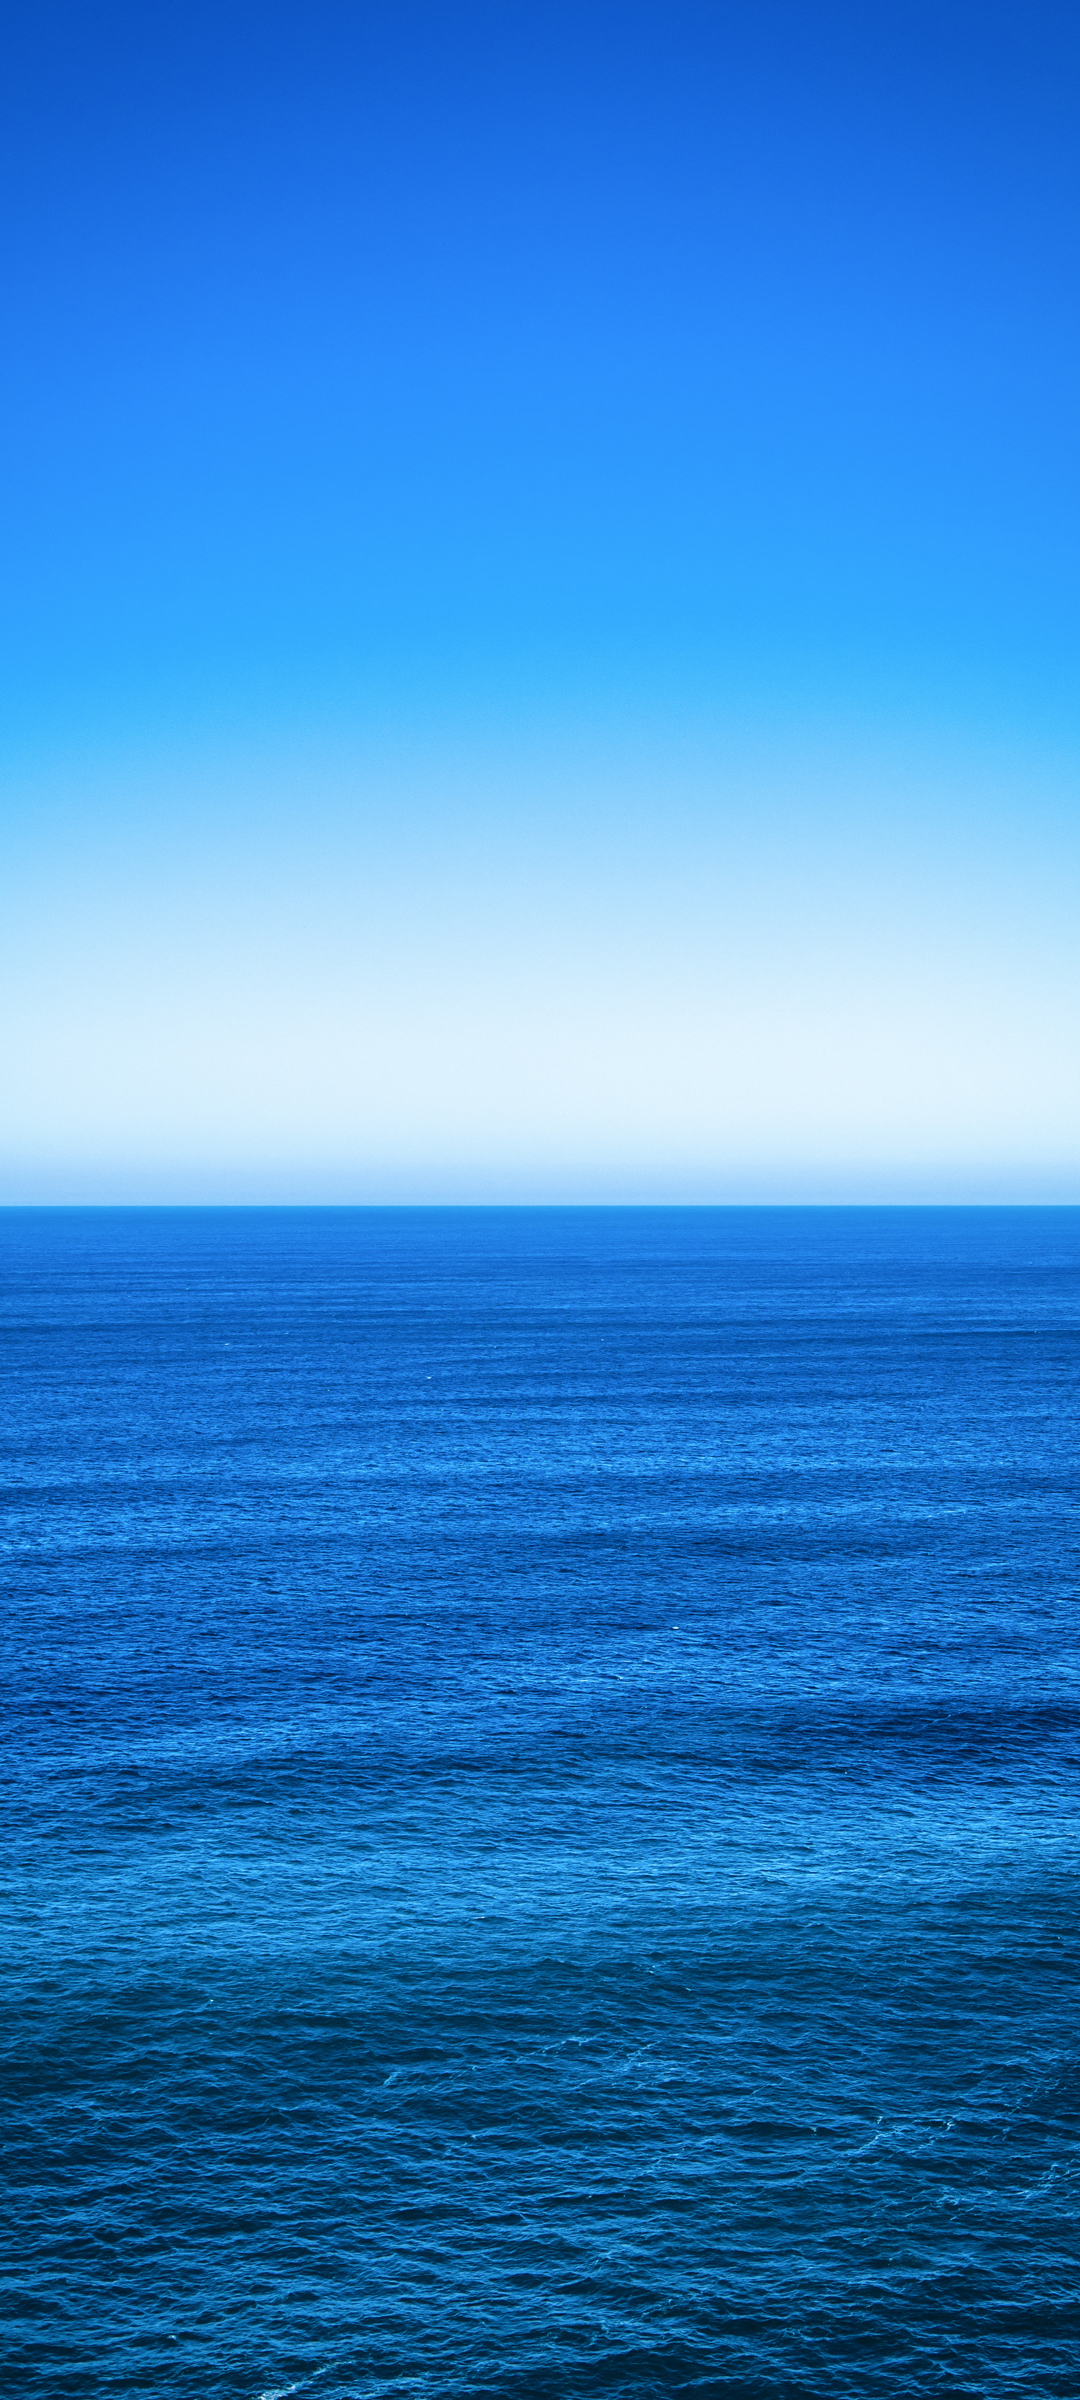 海天一线 蓝色海洋风景手机壁纸